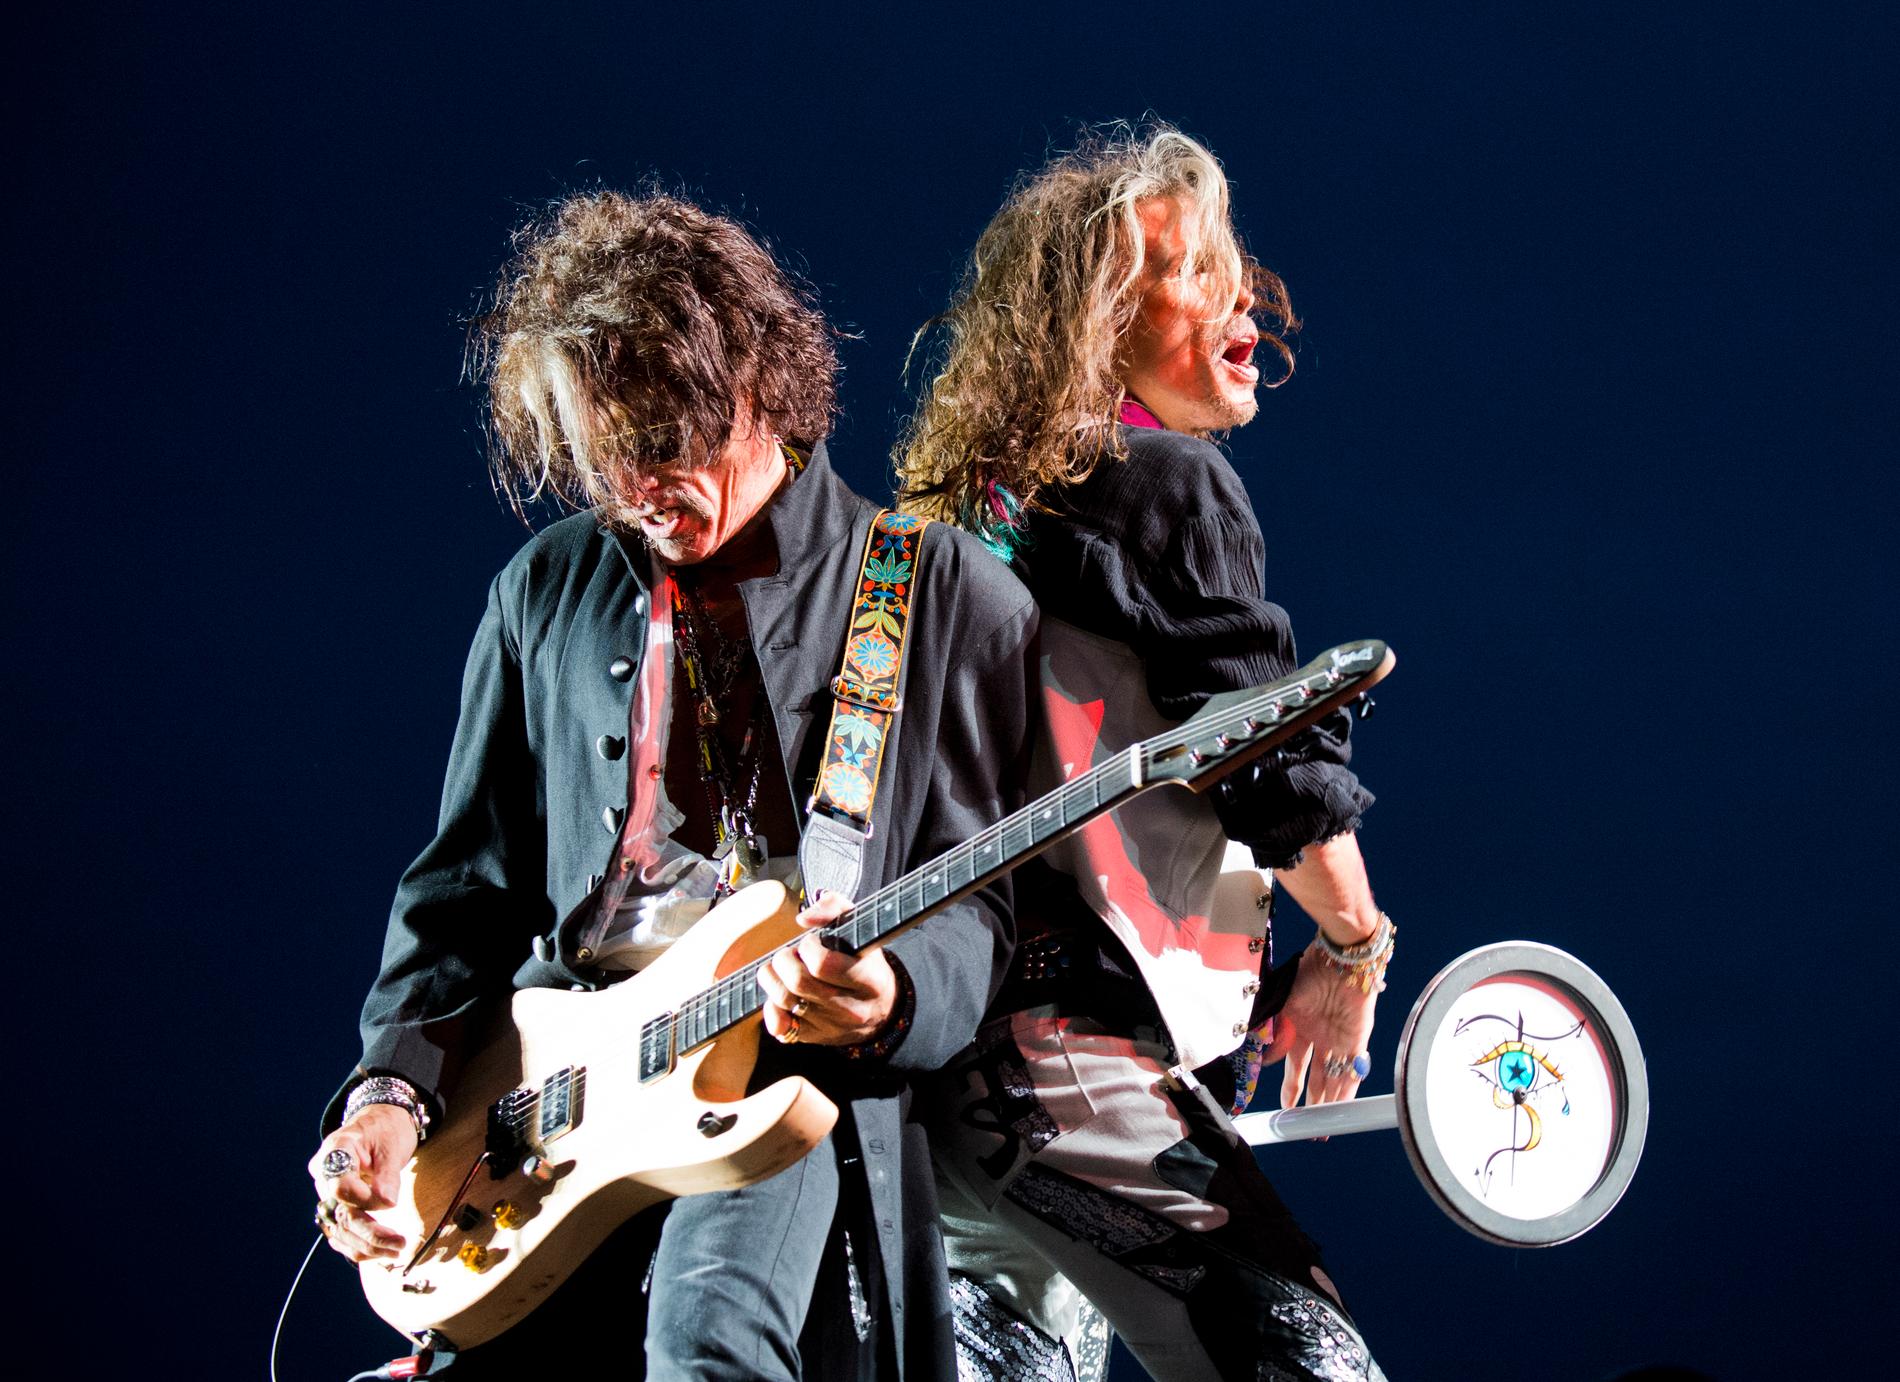  "Sweden Rock Festival". "Aerosmith", Joe Perry, musiker, och Steven Tyler, sångare USA